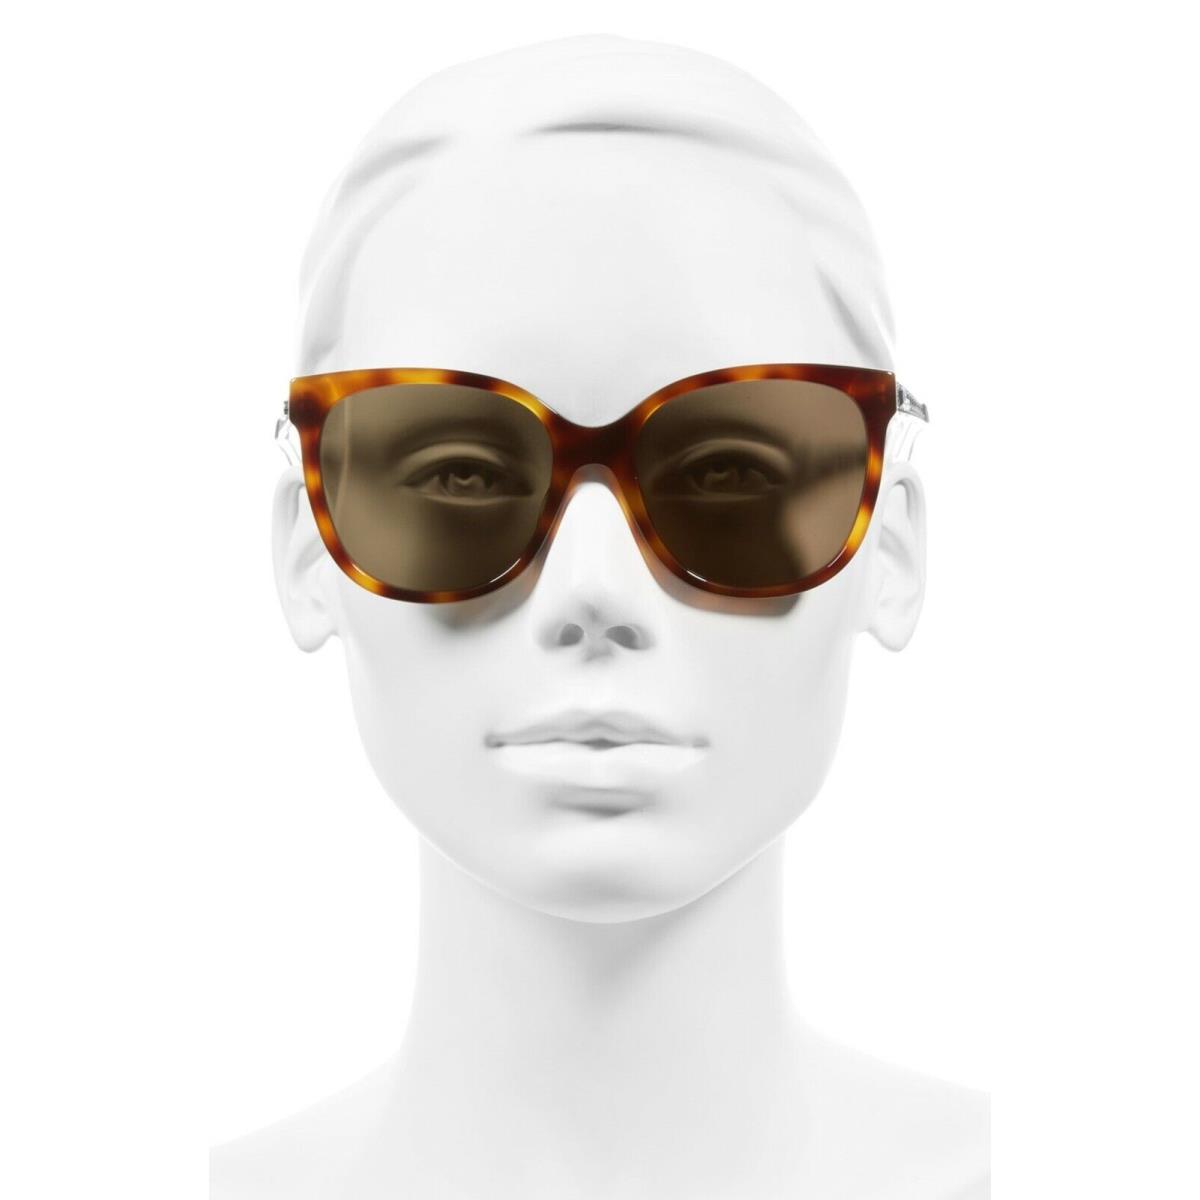 Dior sunglasses AMA - Brown Frame, Brown Lens, Havana & Copper Manufacturer 0